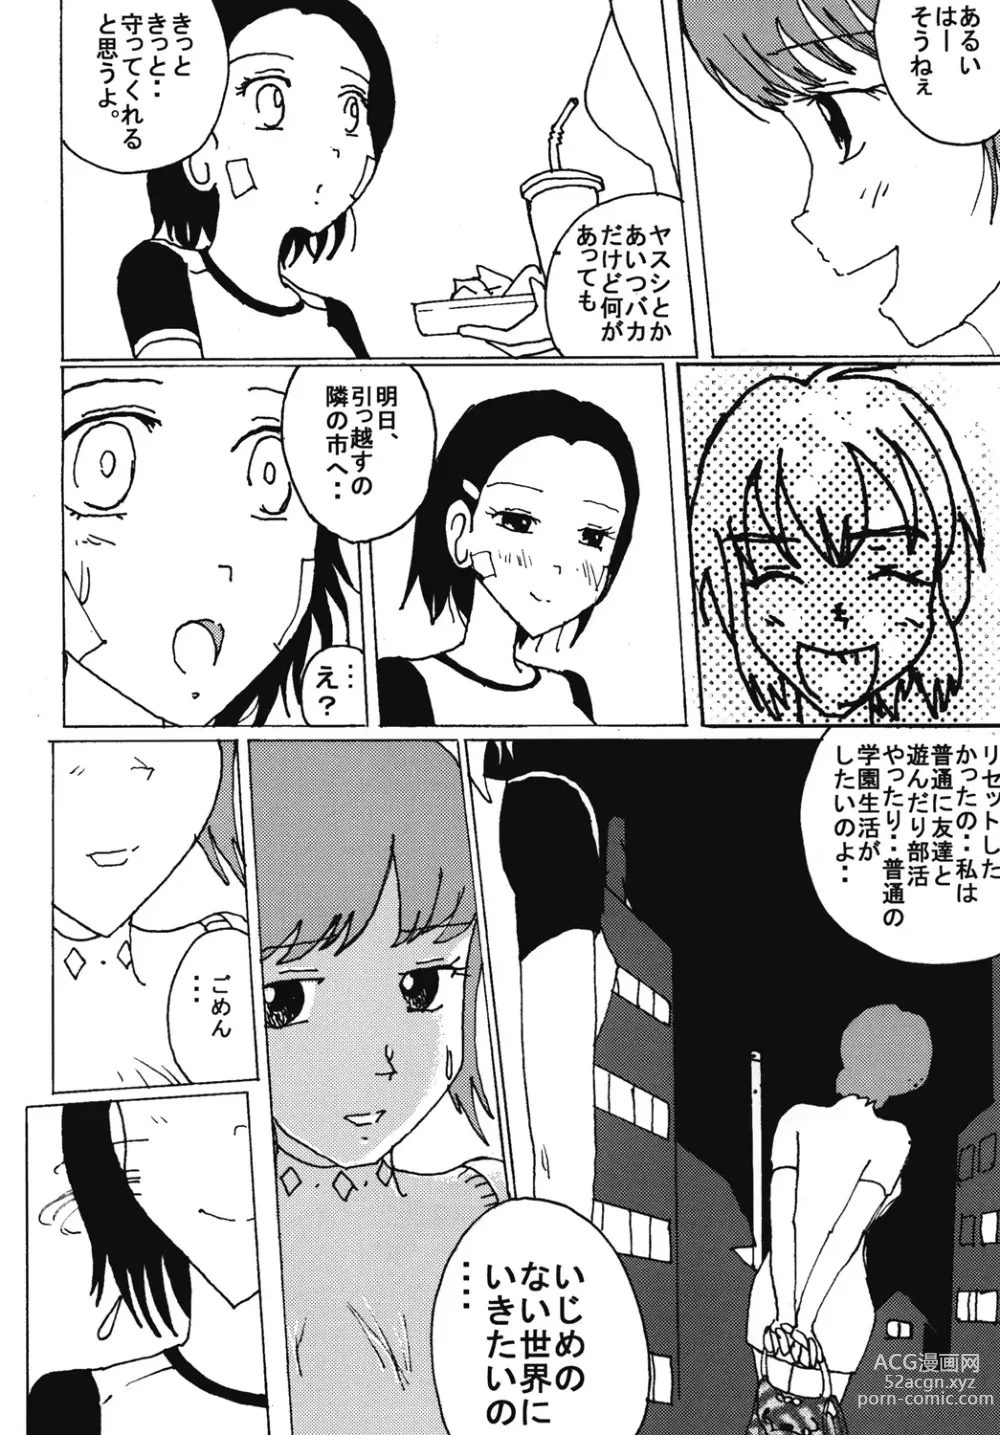 Page 11 of doujinshi Mune Ippai no Dizzy